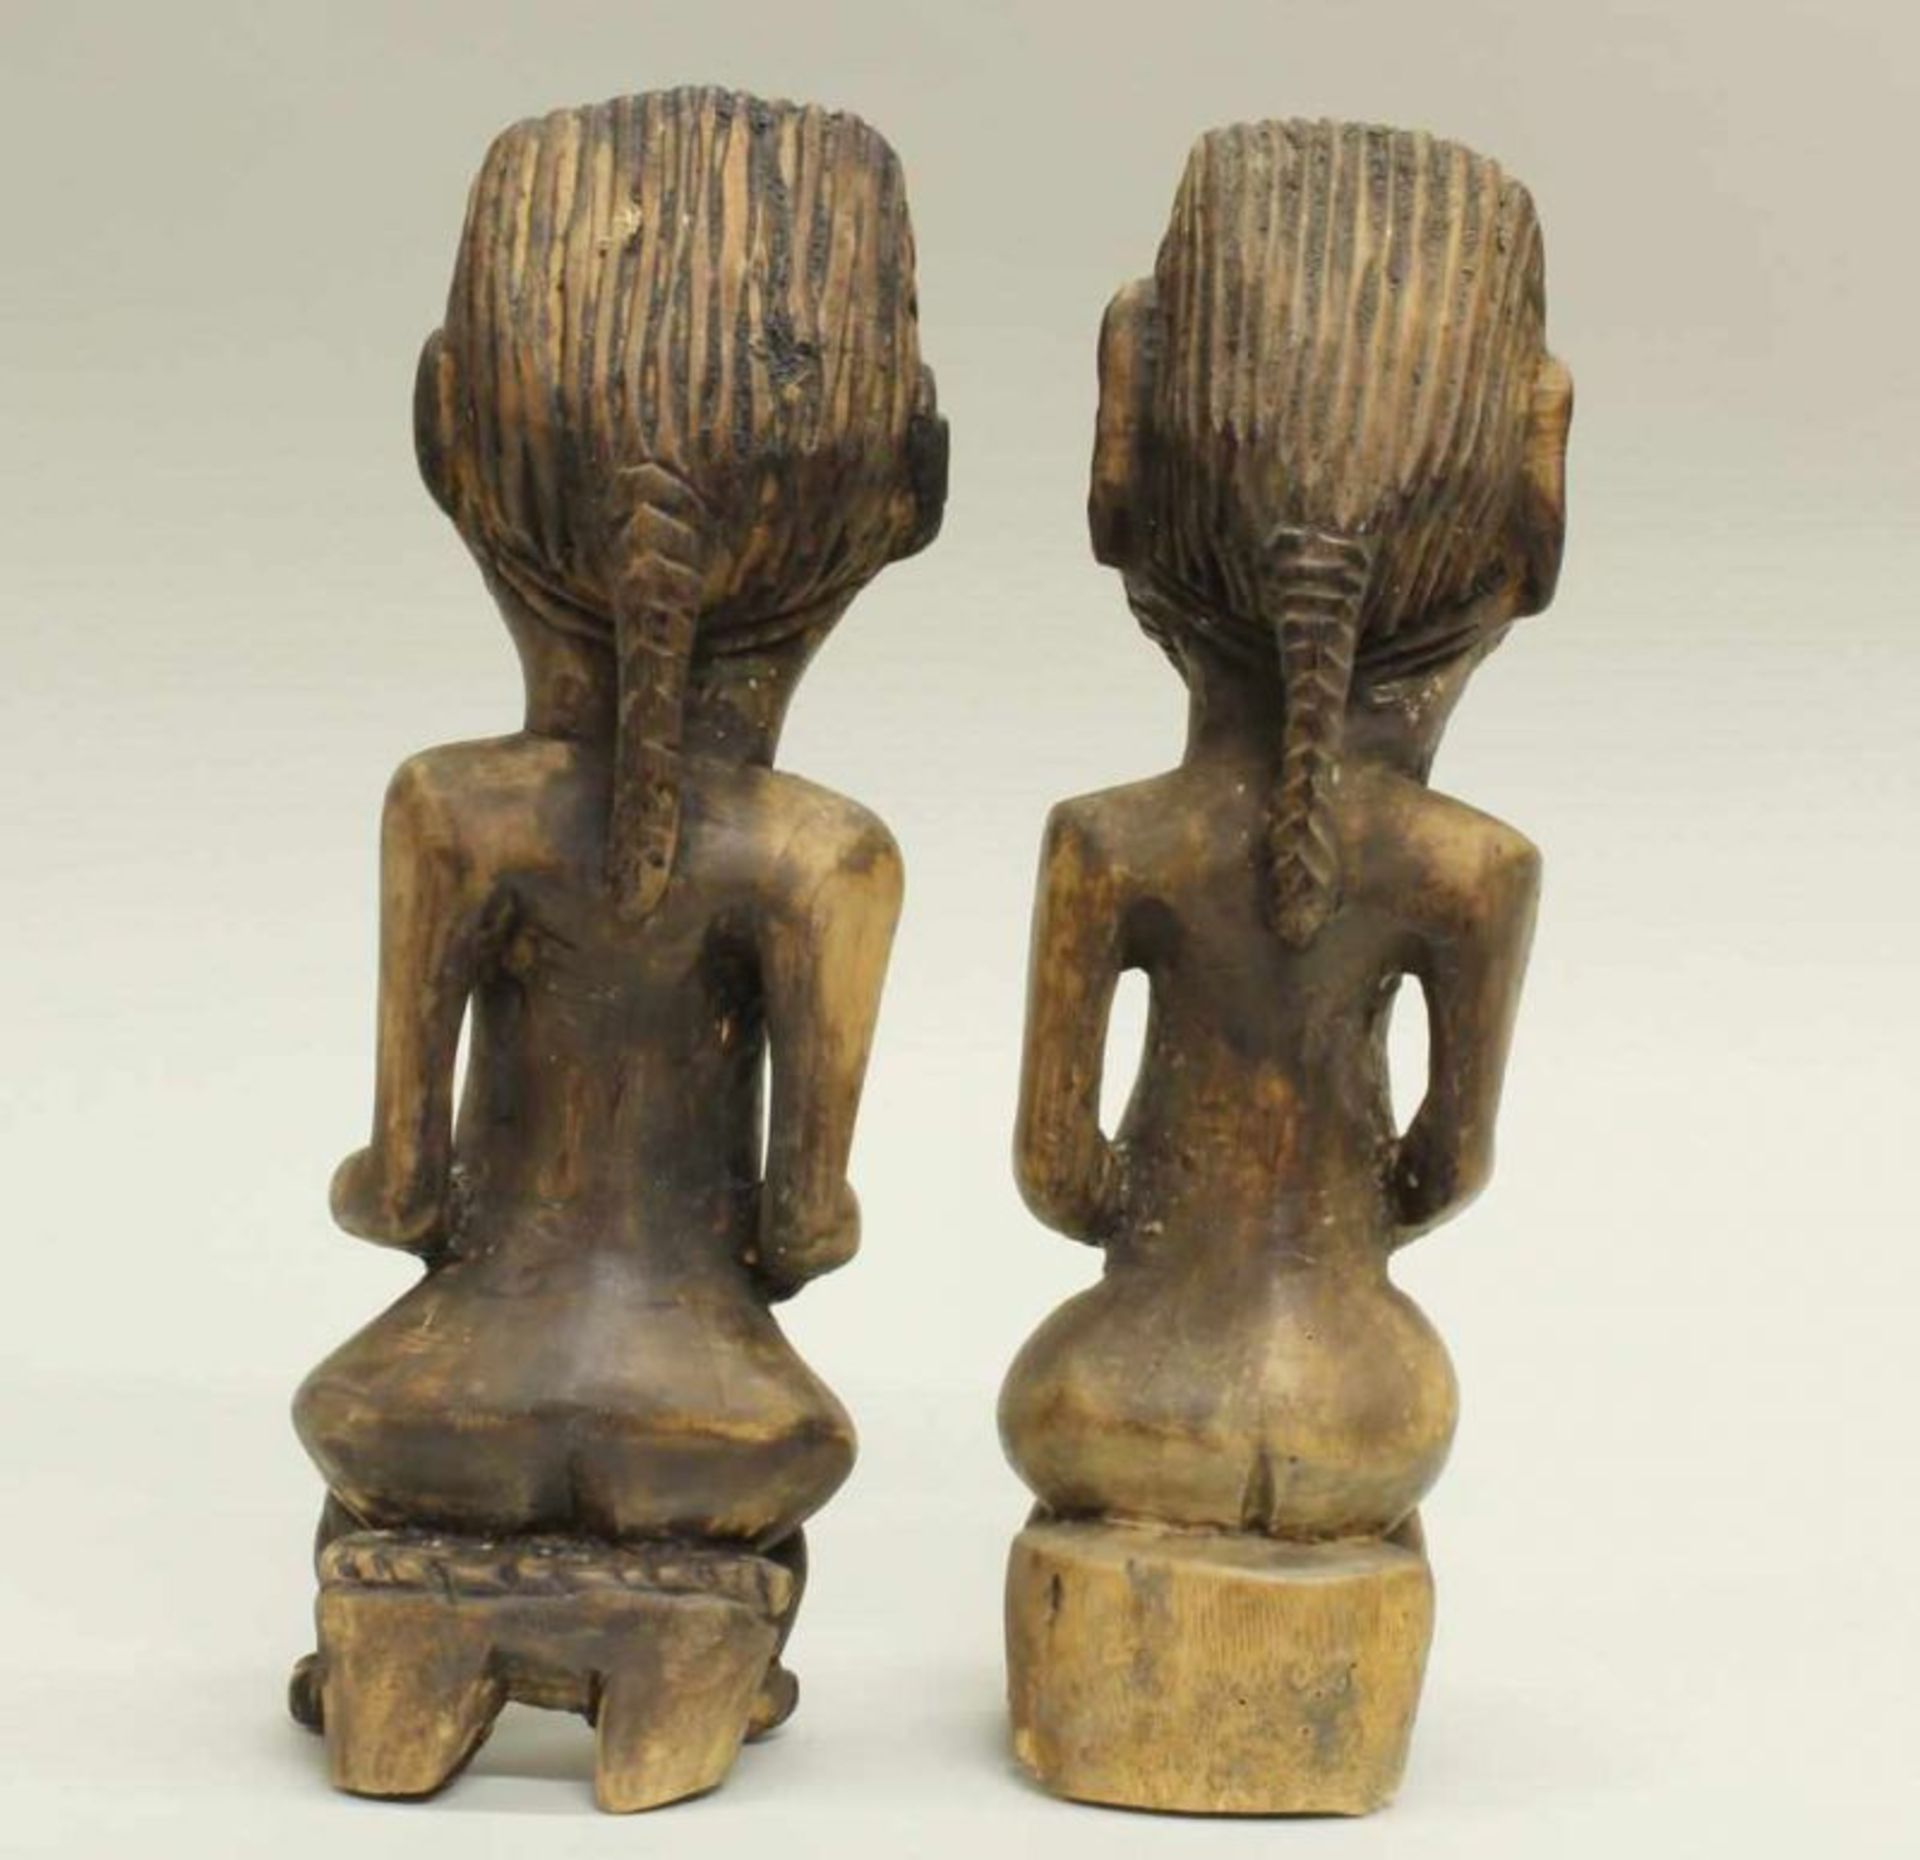 Figurenpaar, wohl Bakongo, Kongo, Afrika, Paar auf Hocker sitzend, 30 cm hoch 20.00 % buyer's - Image 2 of 2